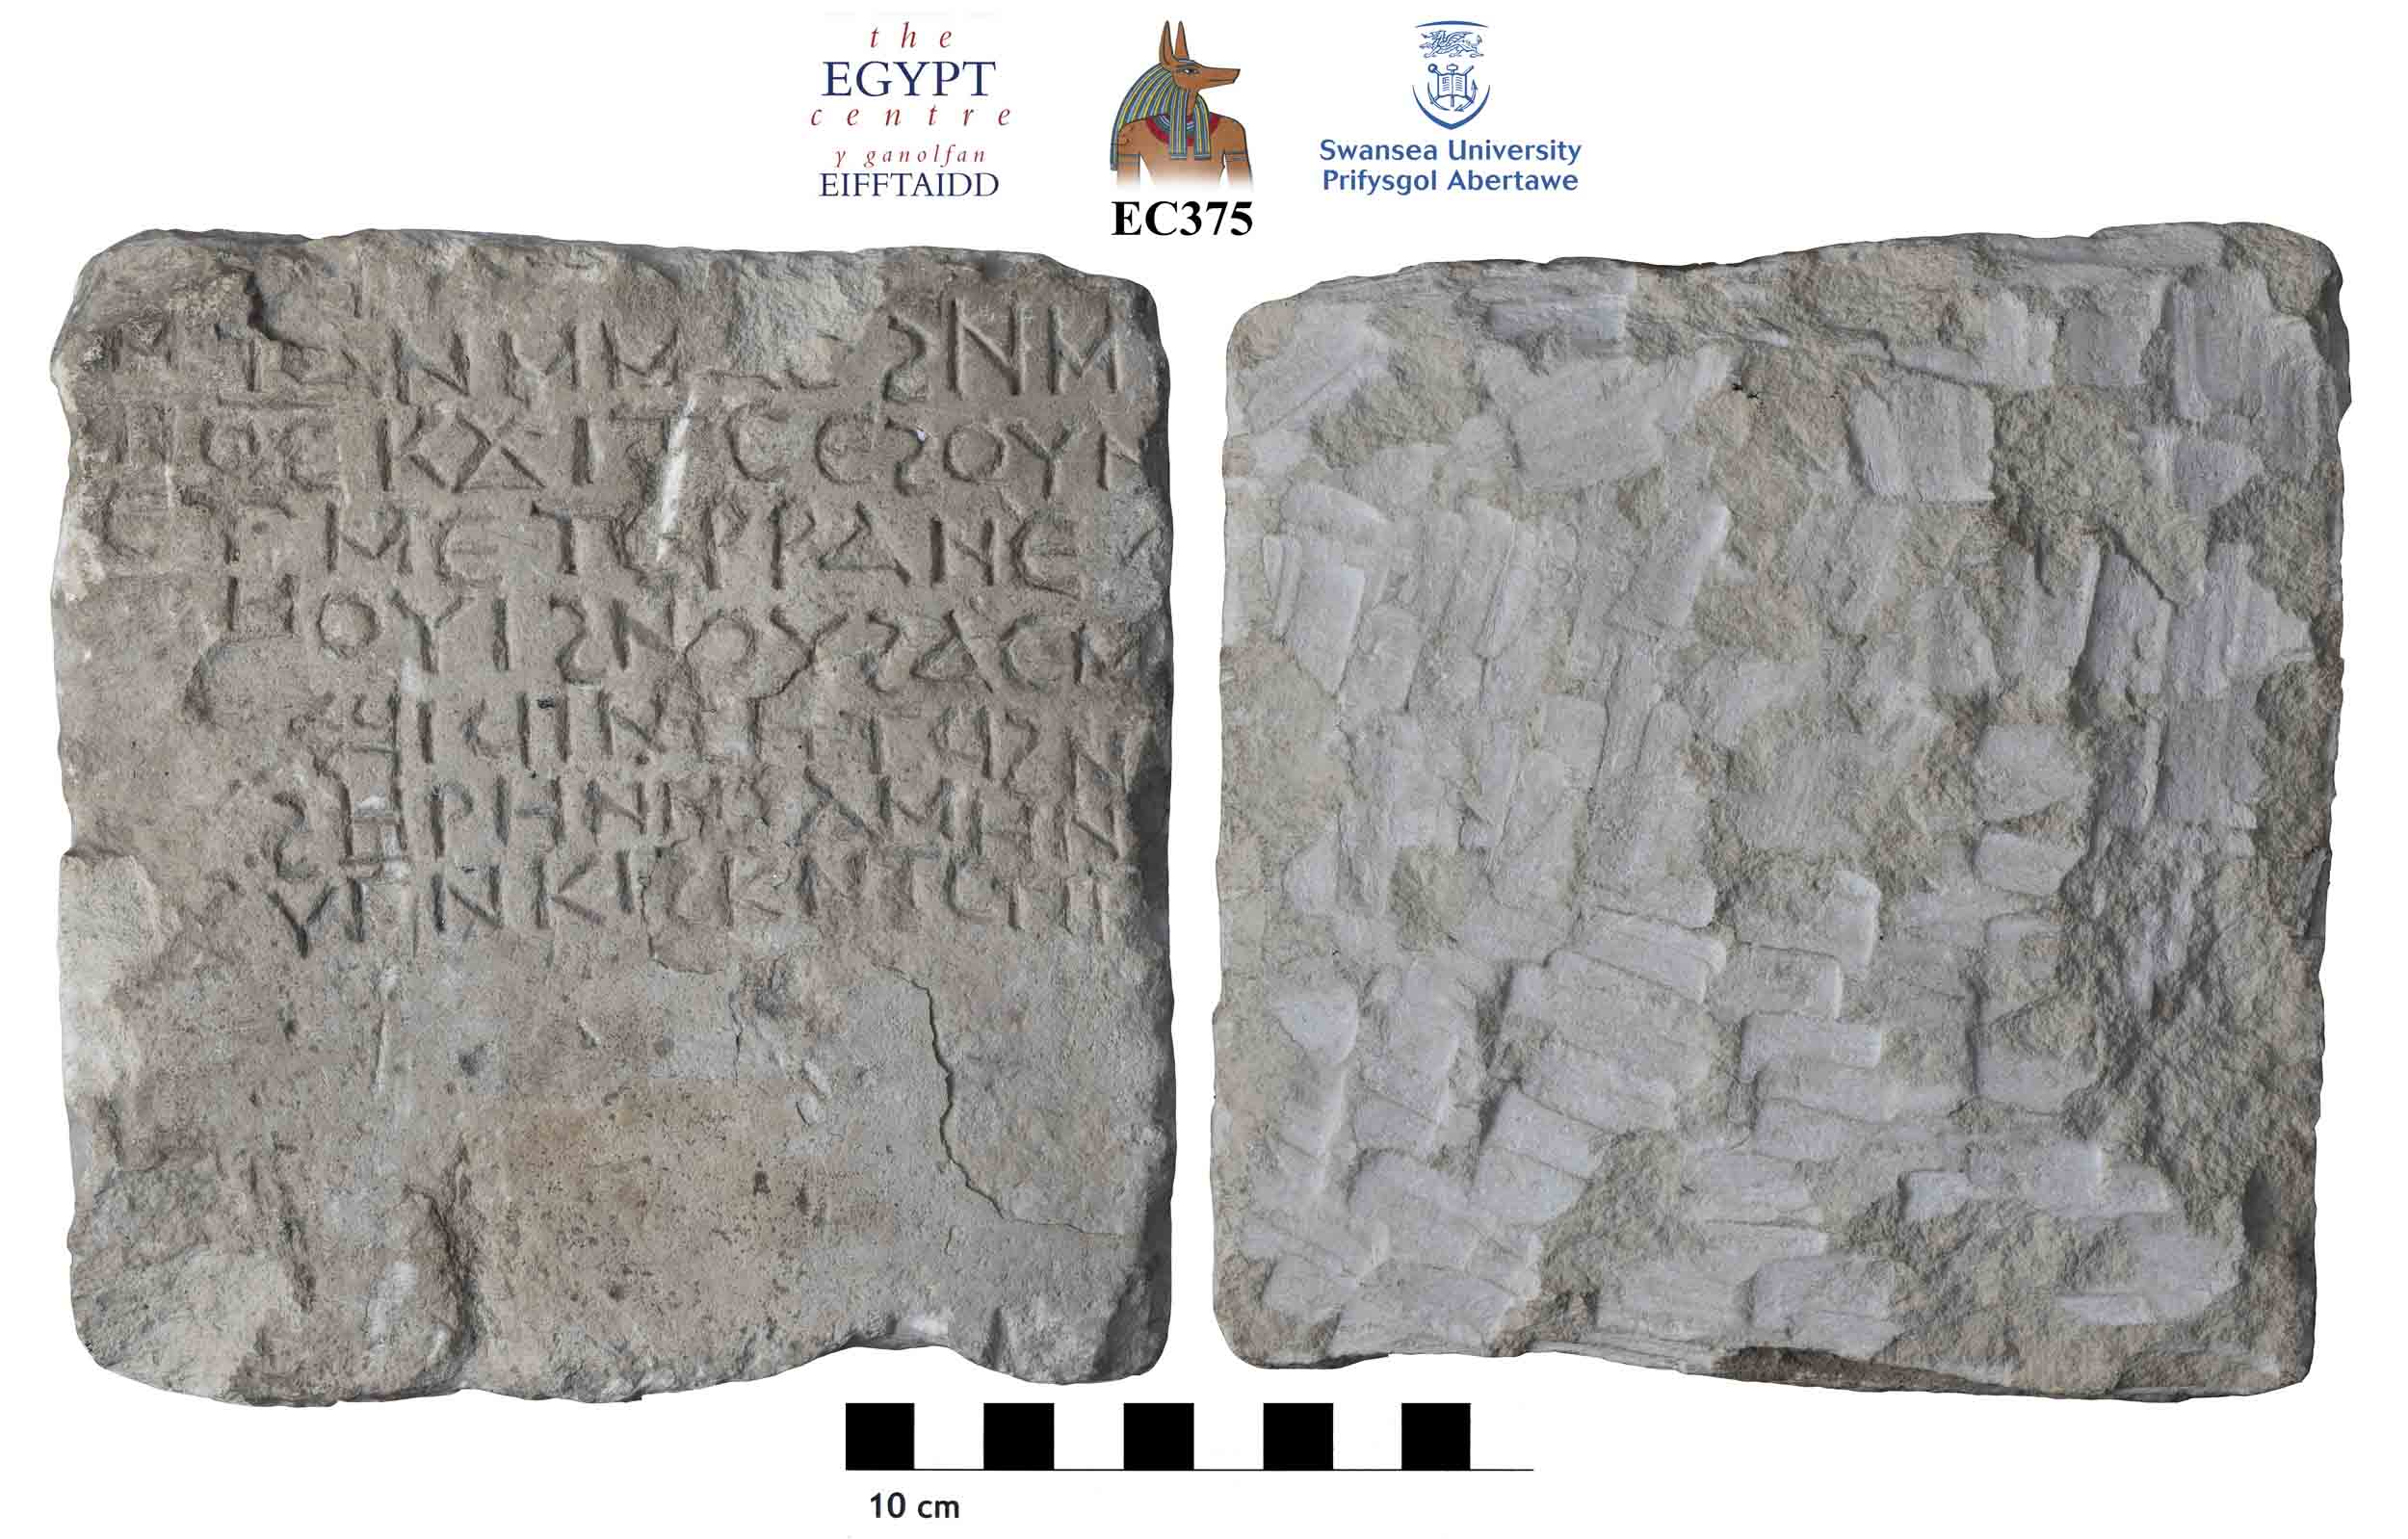 Image for: Coptic stela